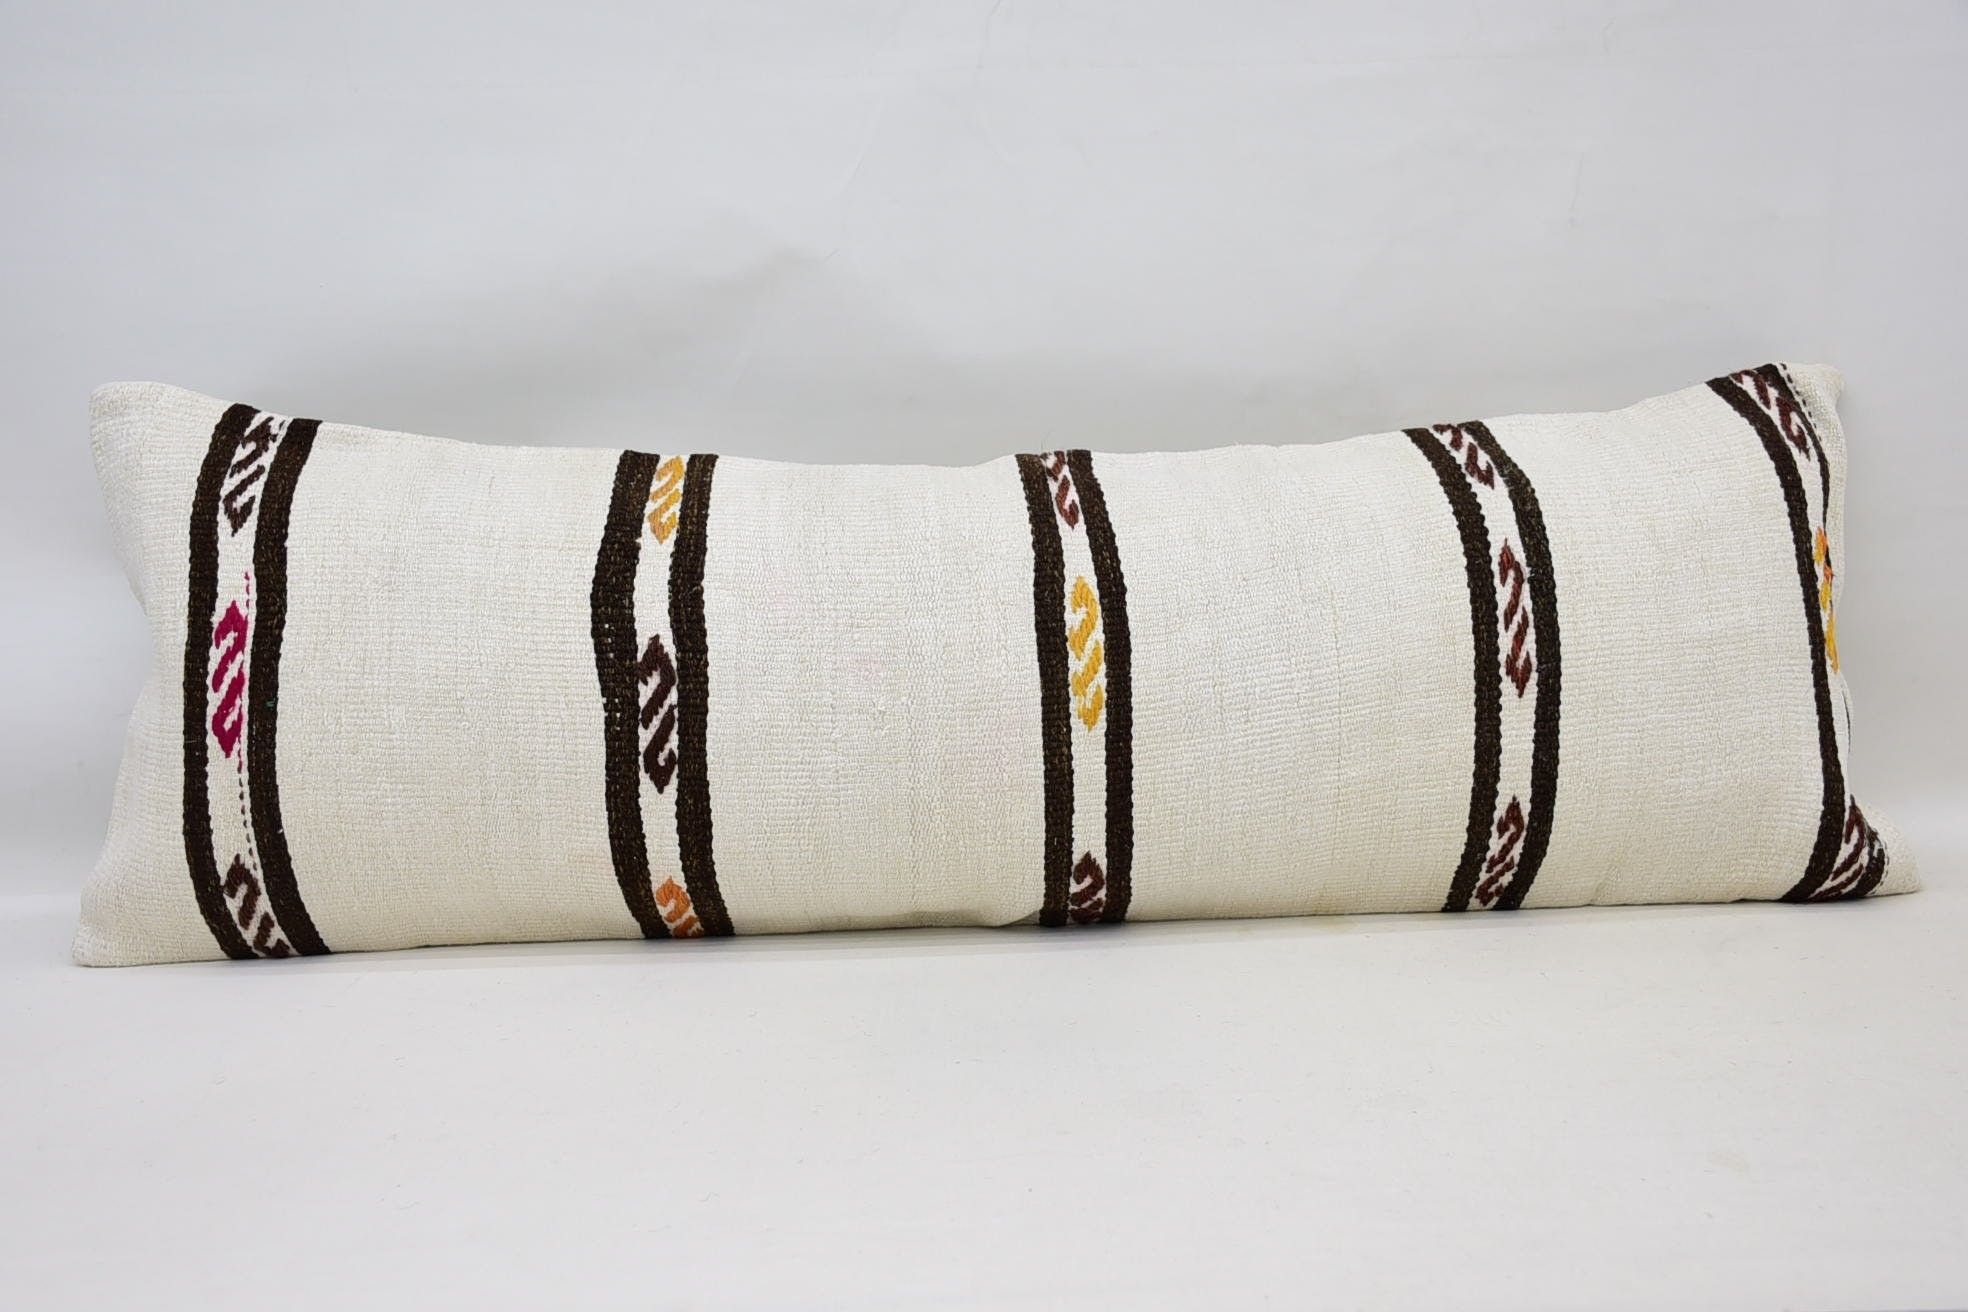 Kilim Kırlent, 16"x48" Beyaz Yastık Kılıfı, Tığ Desenli Yastık Şemsi, Antika Yastıklar, Vintage Kilim Kırlent